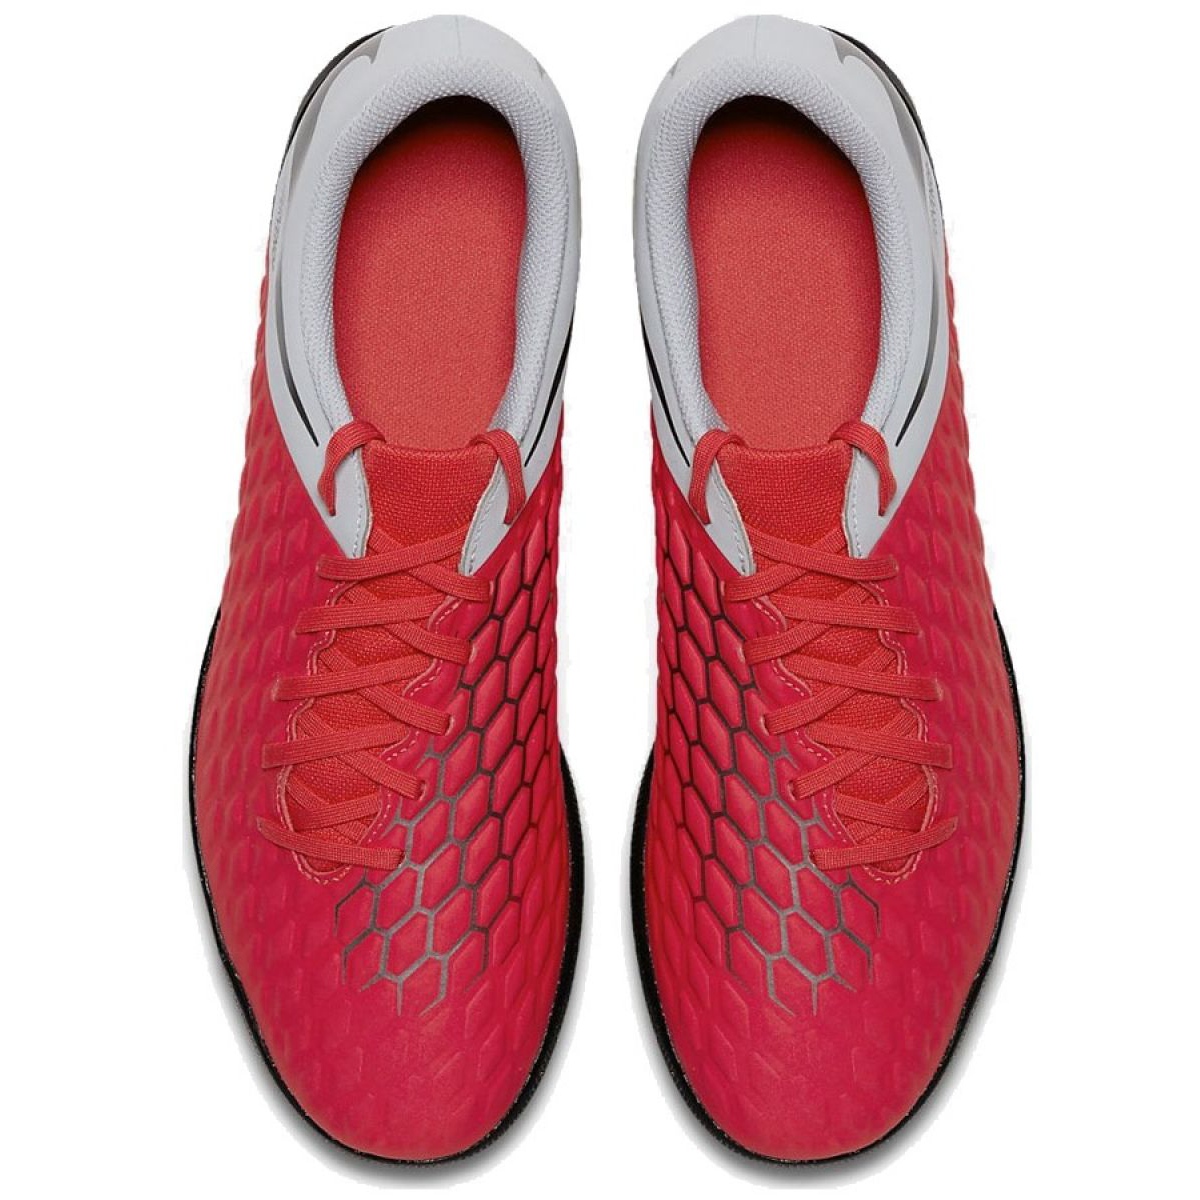 Indoor shoes Nike Hypervenom Phantomx 3 Club Ic M AJ3808-600 red red ...